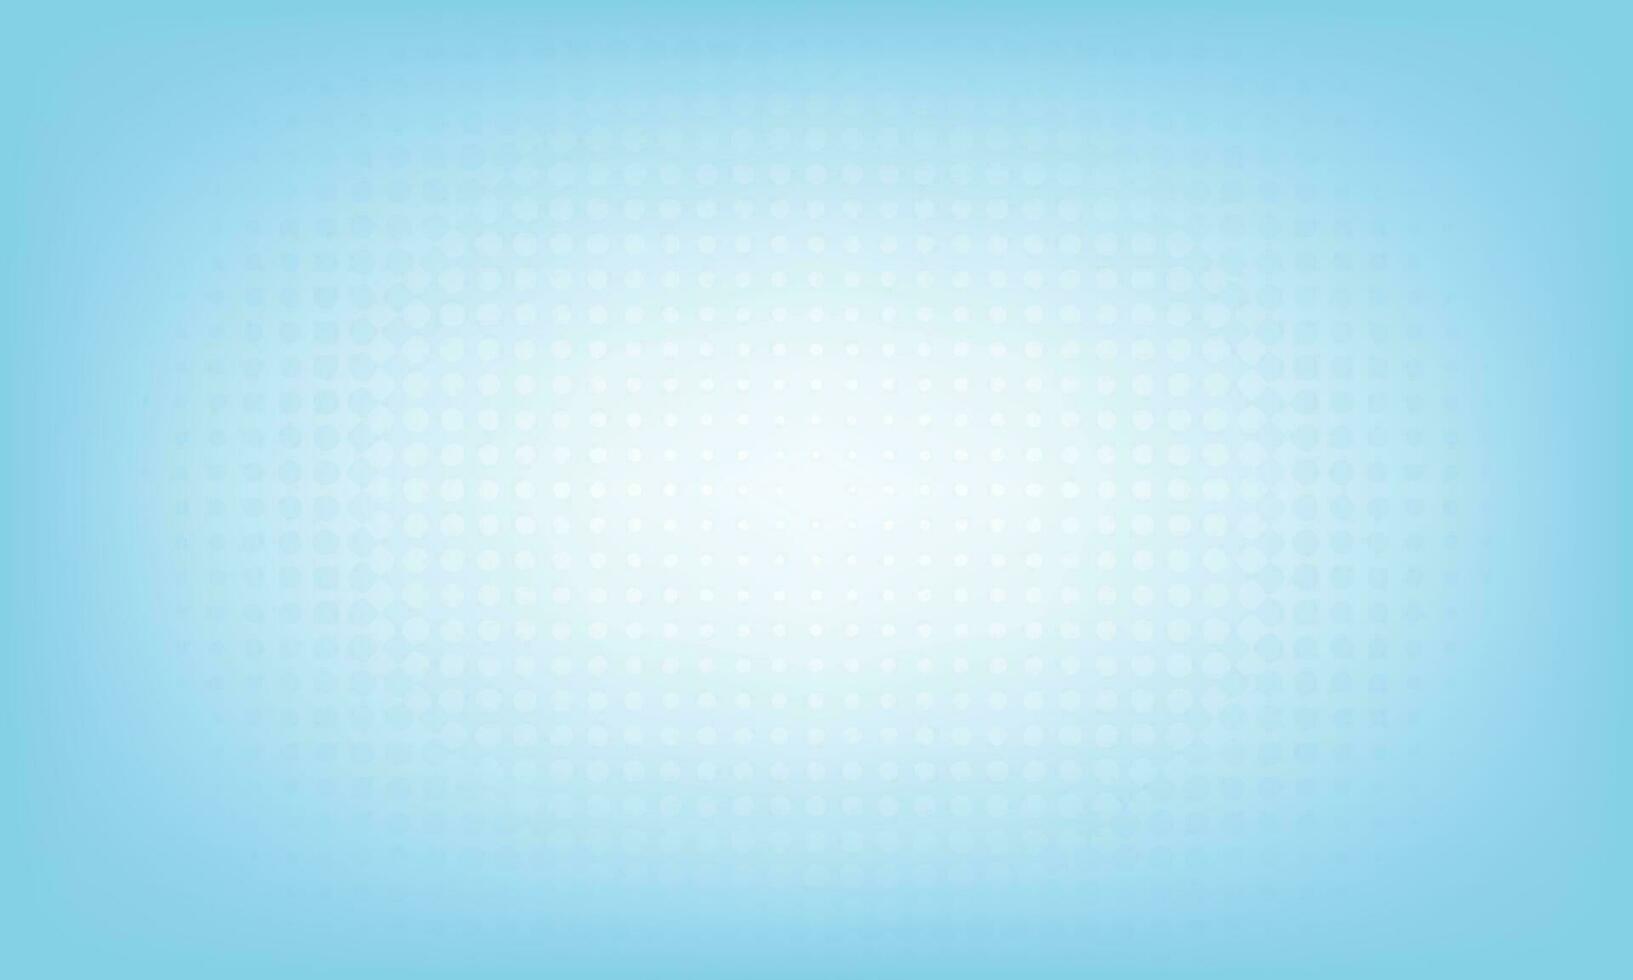 himmelblauer verlaufsfarbe thumbnail webbanner kreativer vorlagenhintergrund vektor